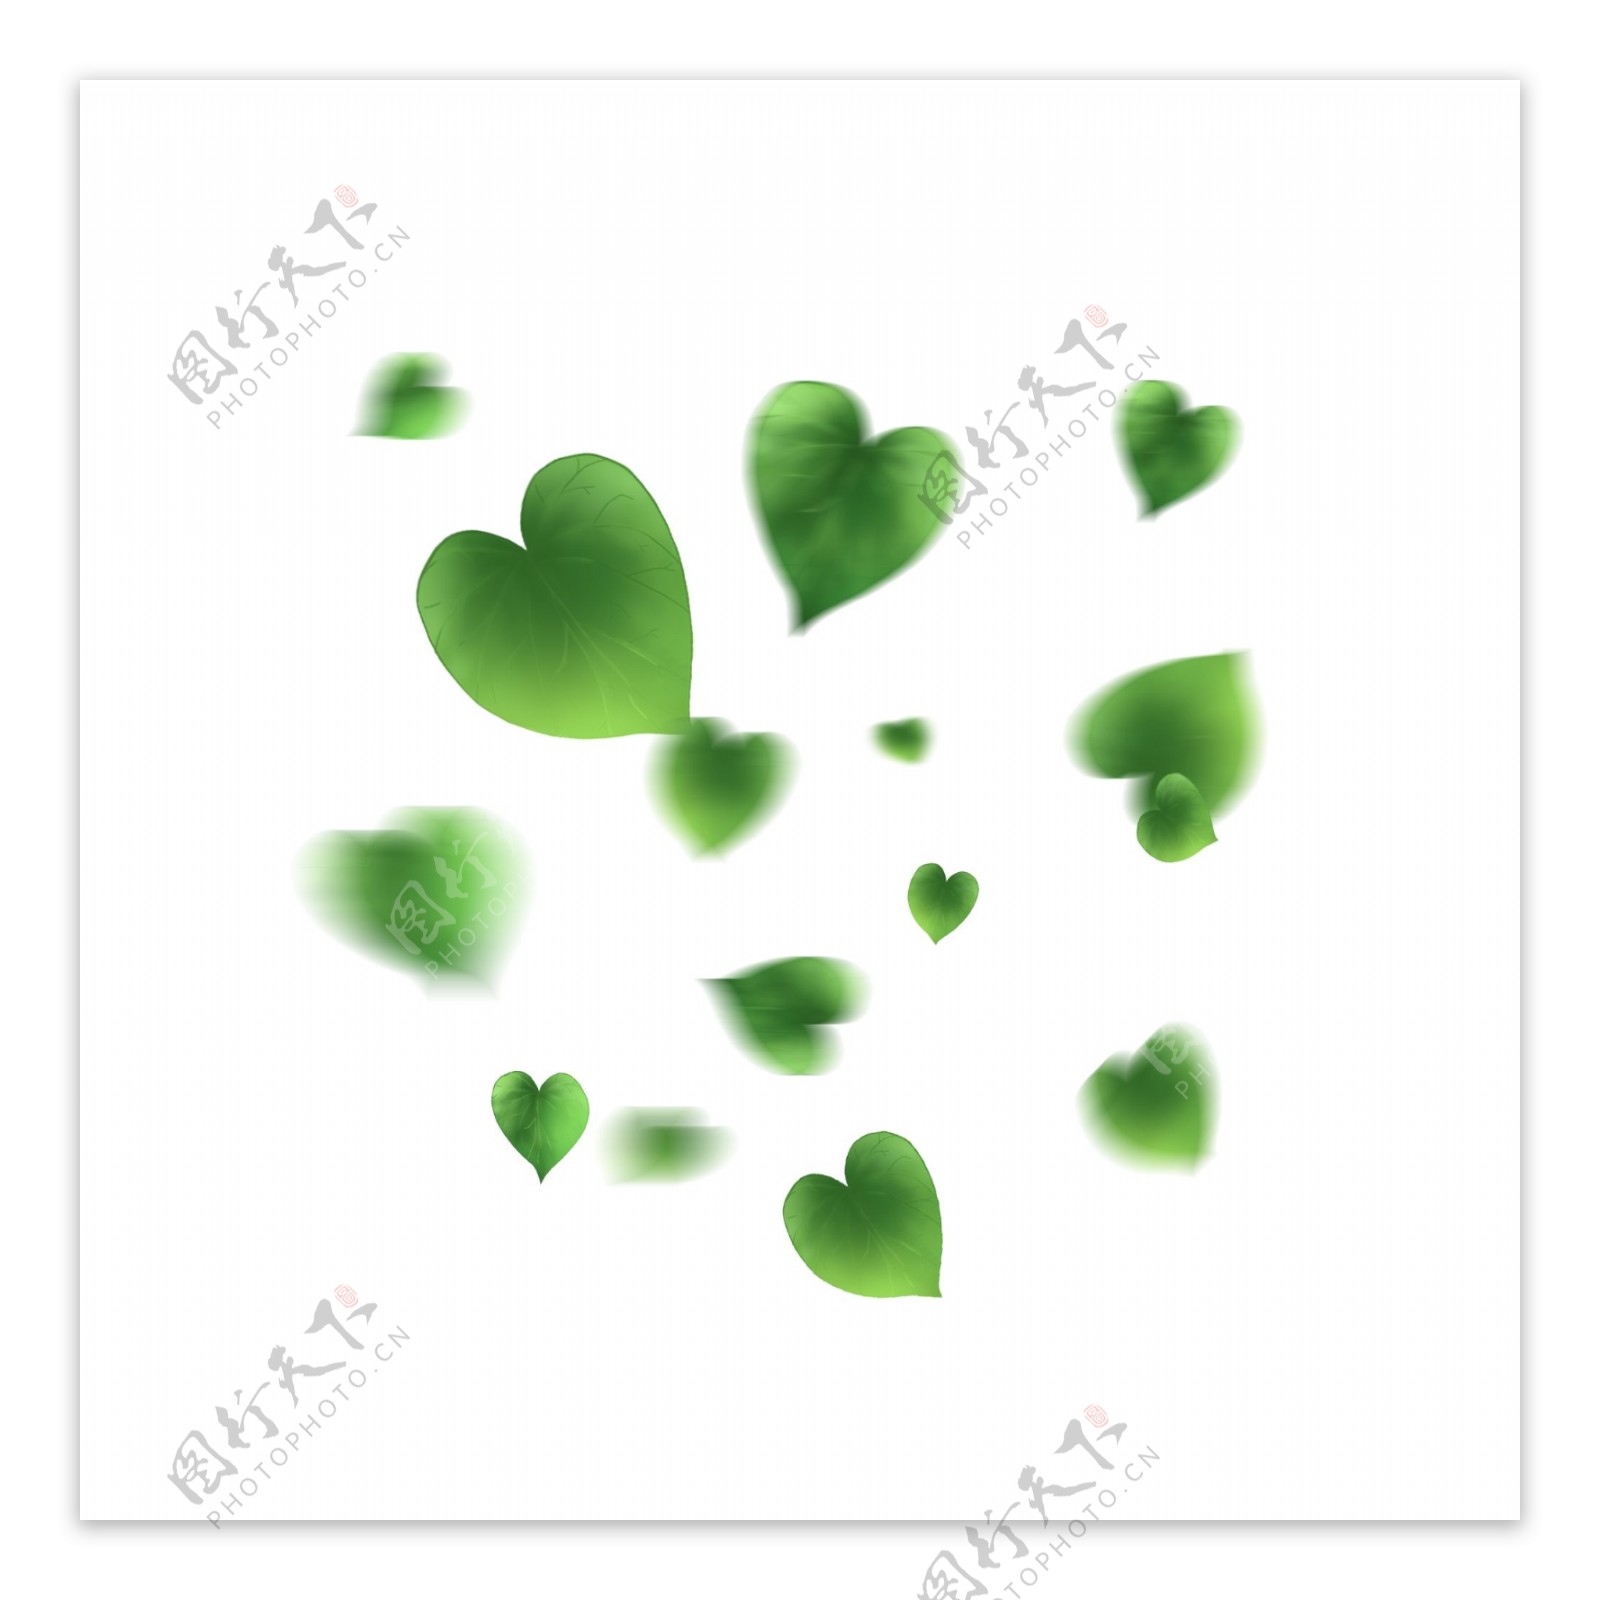 漂浮的树叶漂浮的绿色爱心形树叶